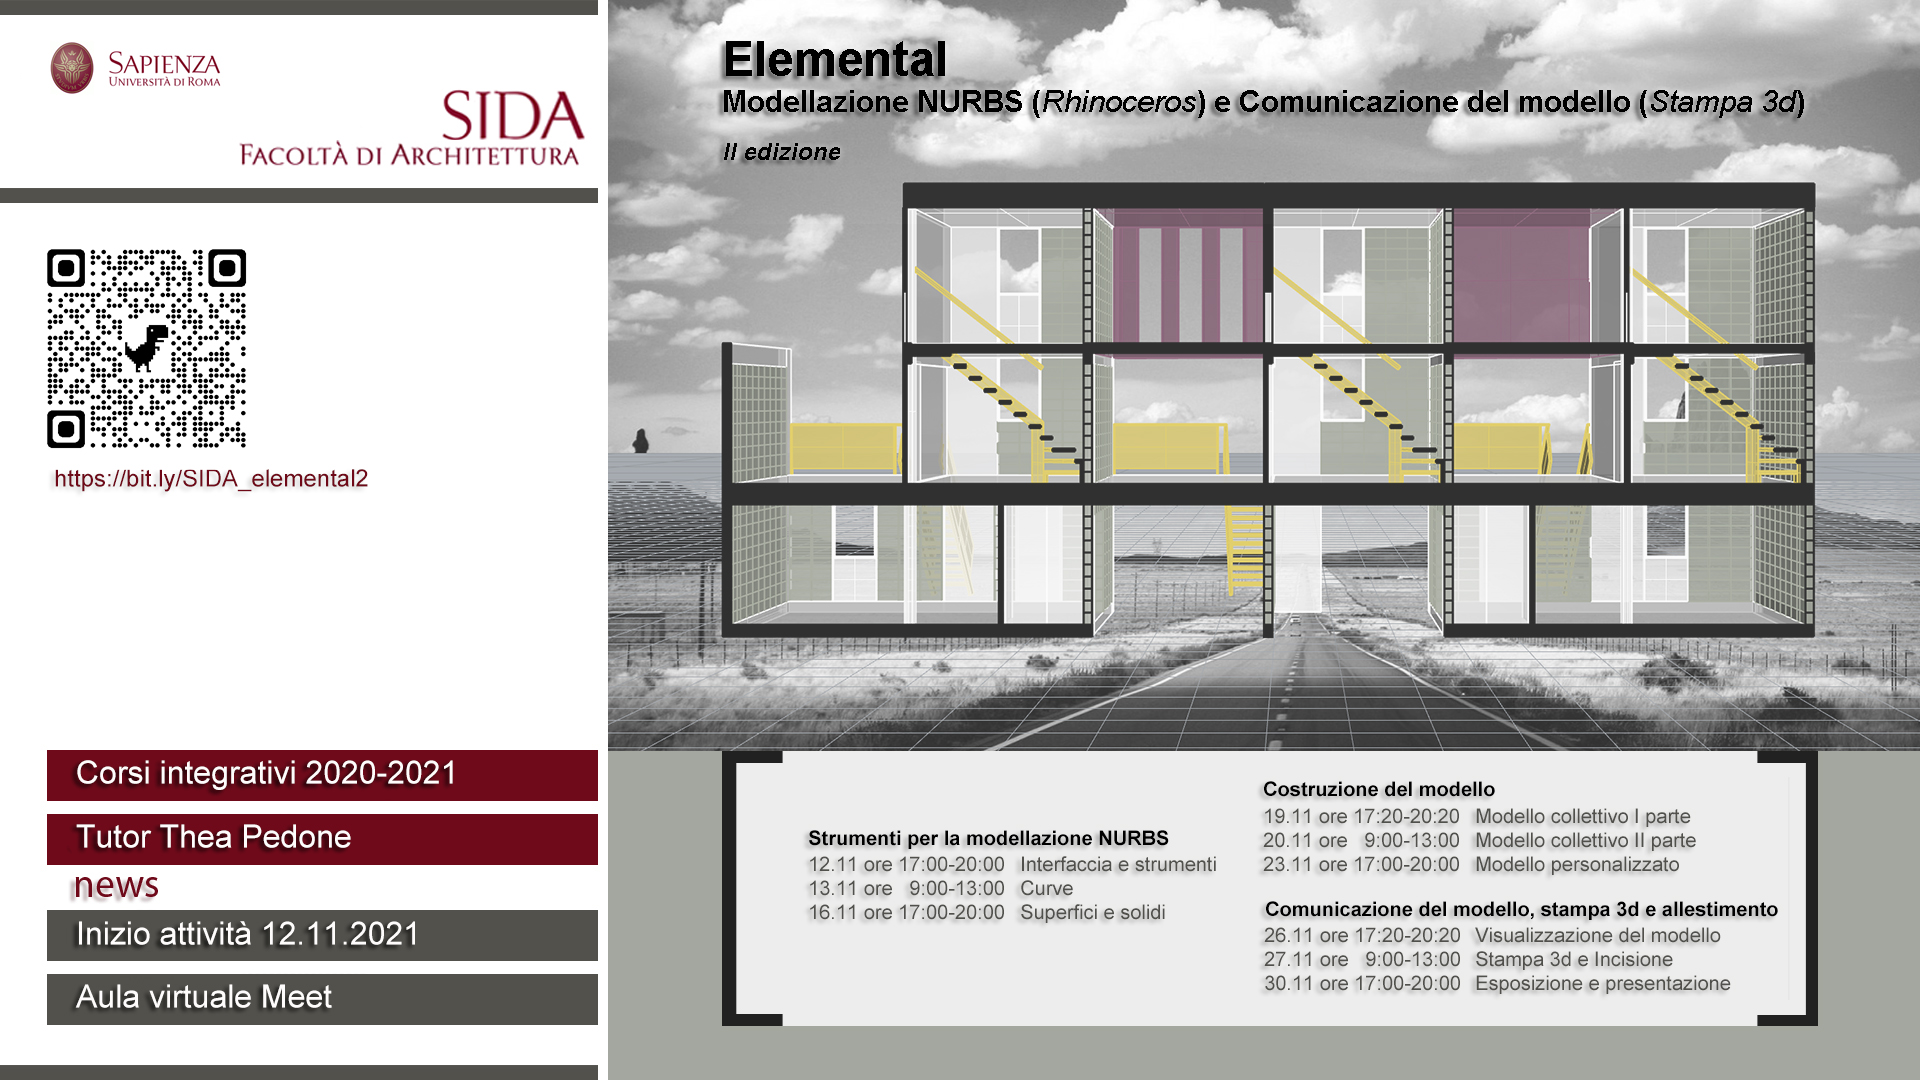 Centro S.I.D.A. - 2021 - ELEMENTAL 2ed. Modellazione NURBS (Rhinoceros) e Comunicazione del modello (Stampa 3d)